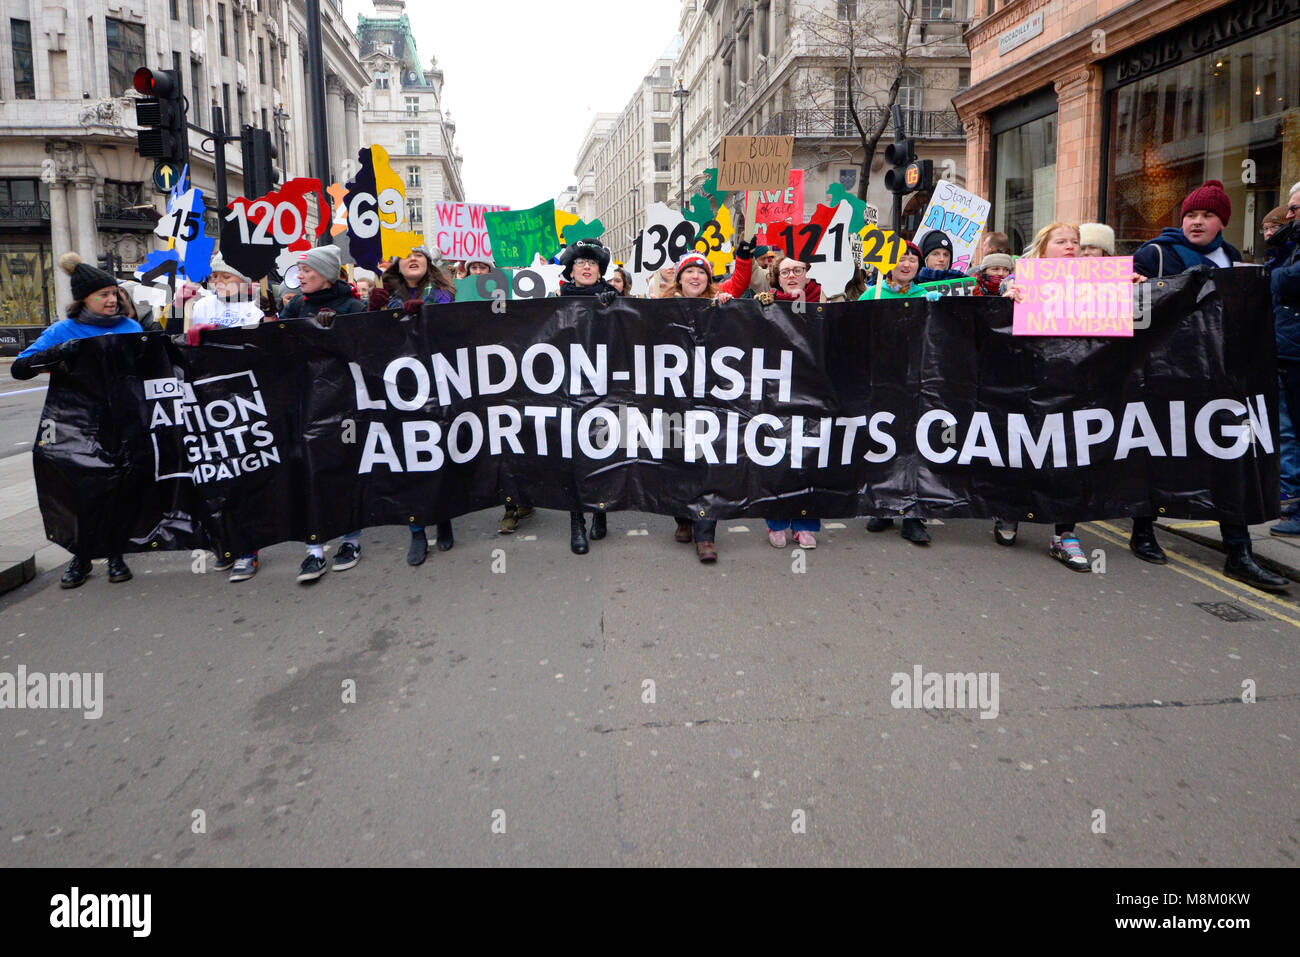 St. Patrick's Day Parade, London, 2018. London Irish Abtreibung Rechte Kampagne Banner. Die Demonstranten. Marschieren. Protest Stockfoto